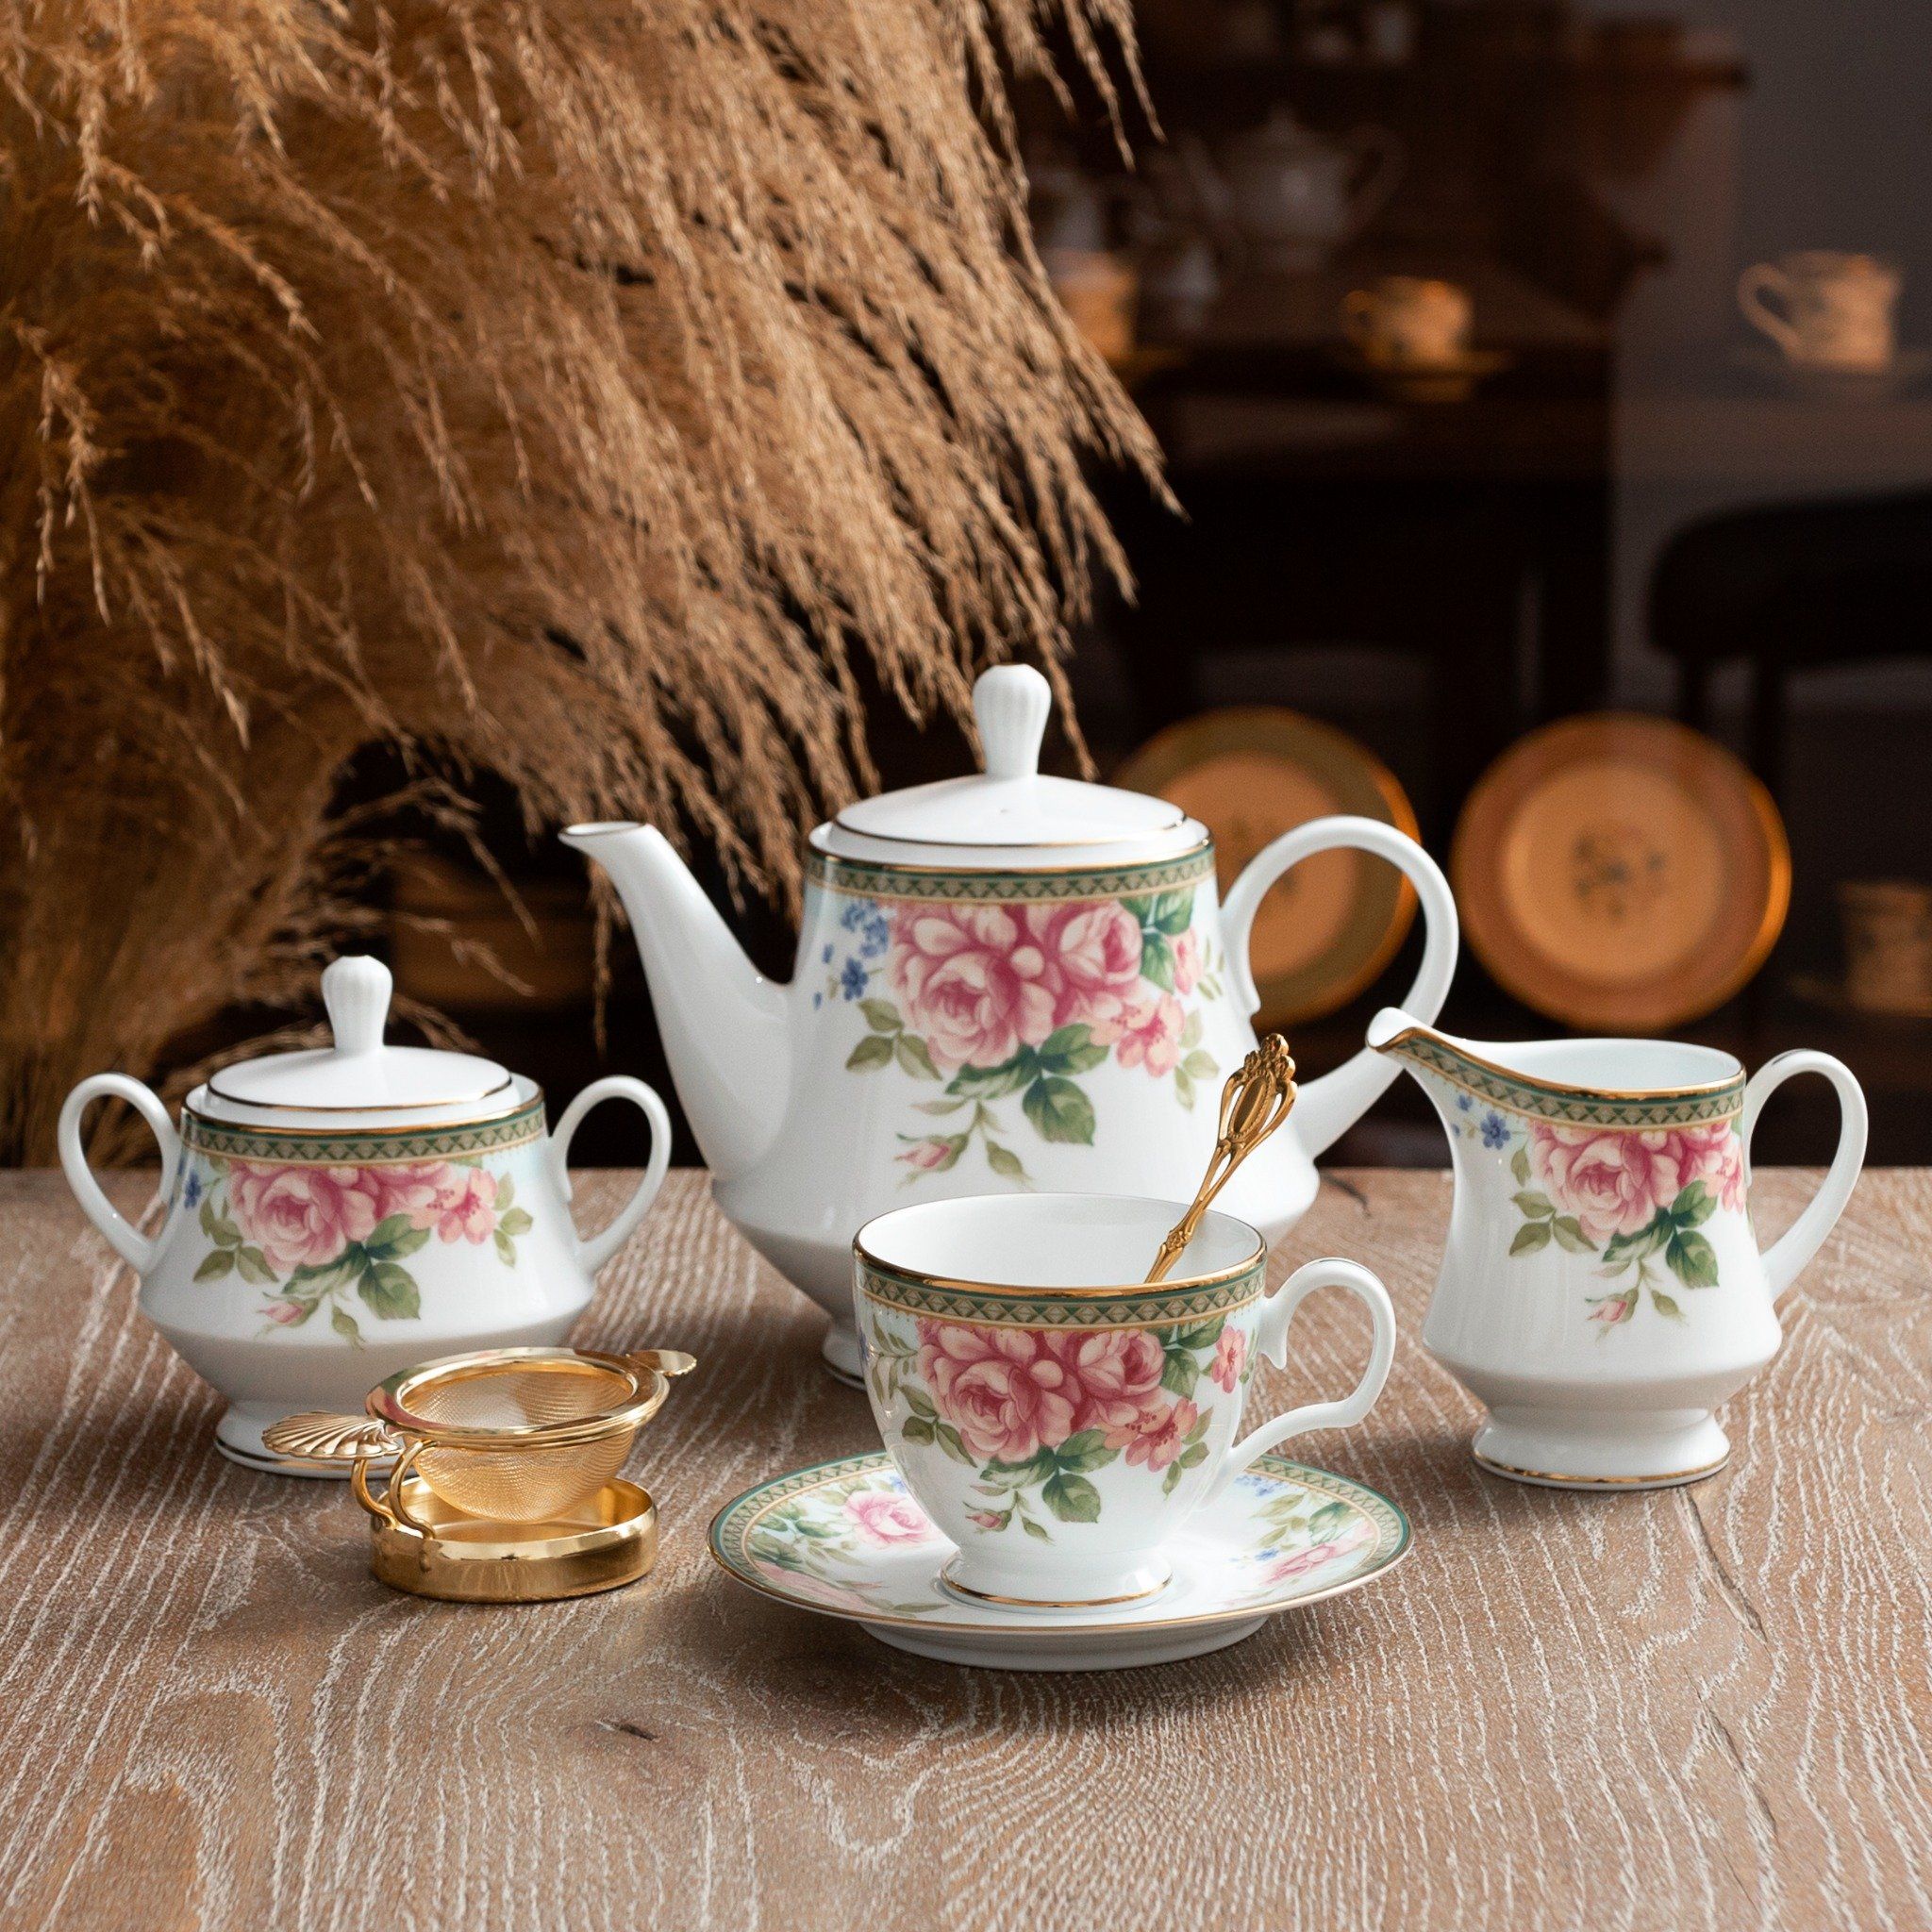  Bộ ấm chén uống trà sứ trắng 15 món | Rosa Basket 1736 